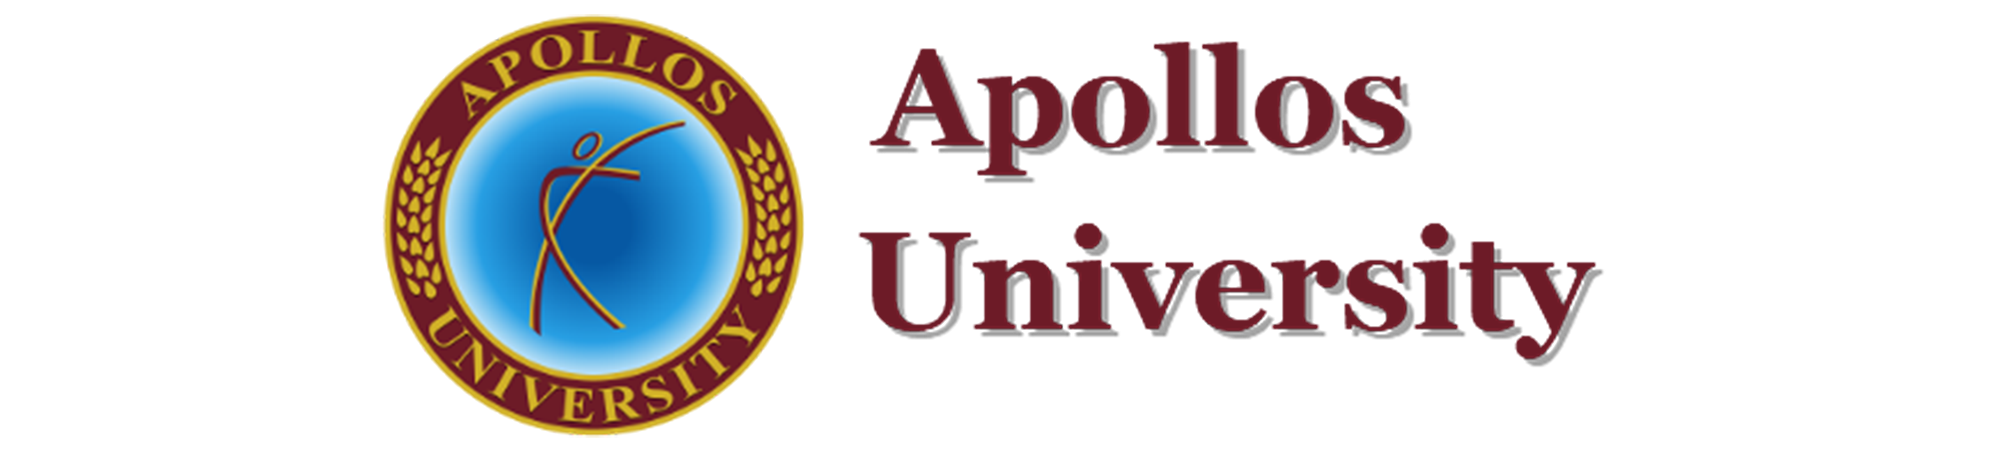 apollos-university